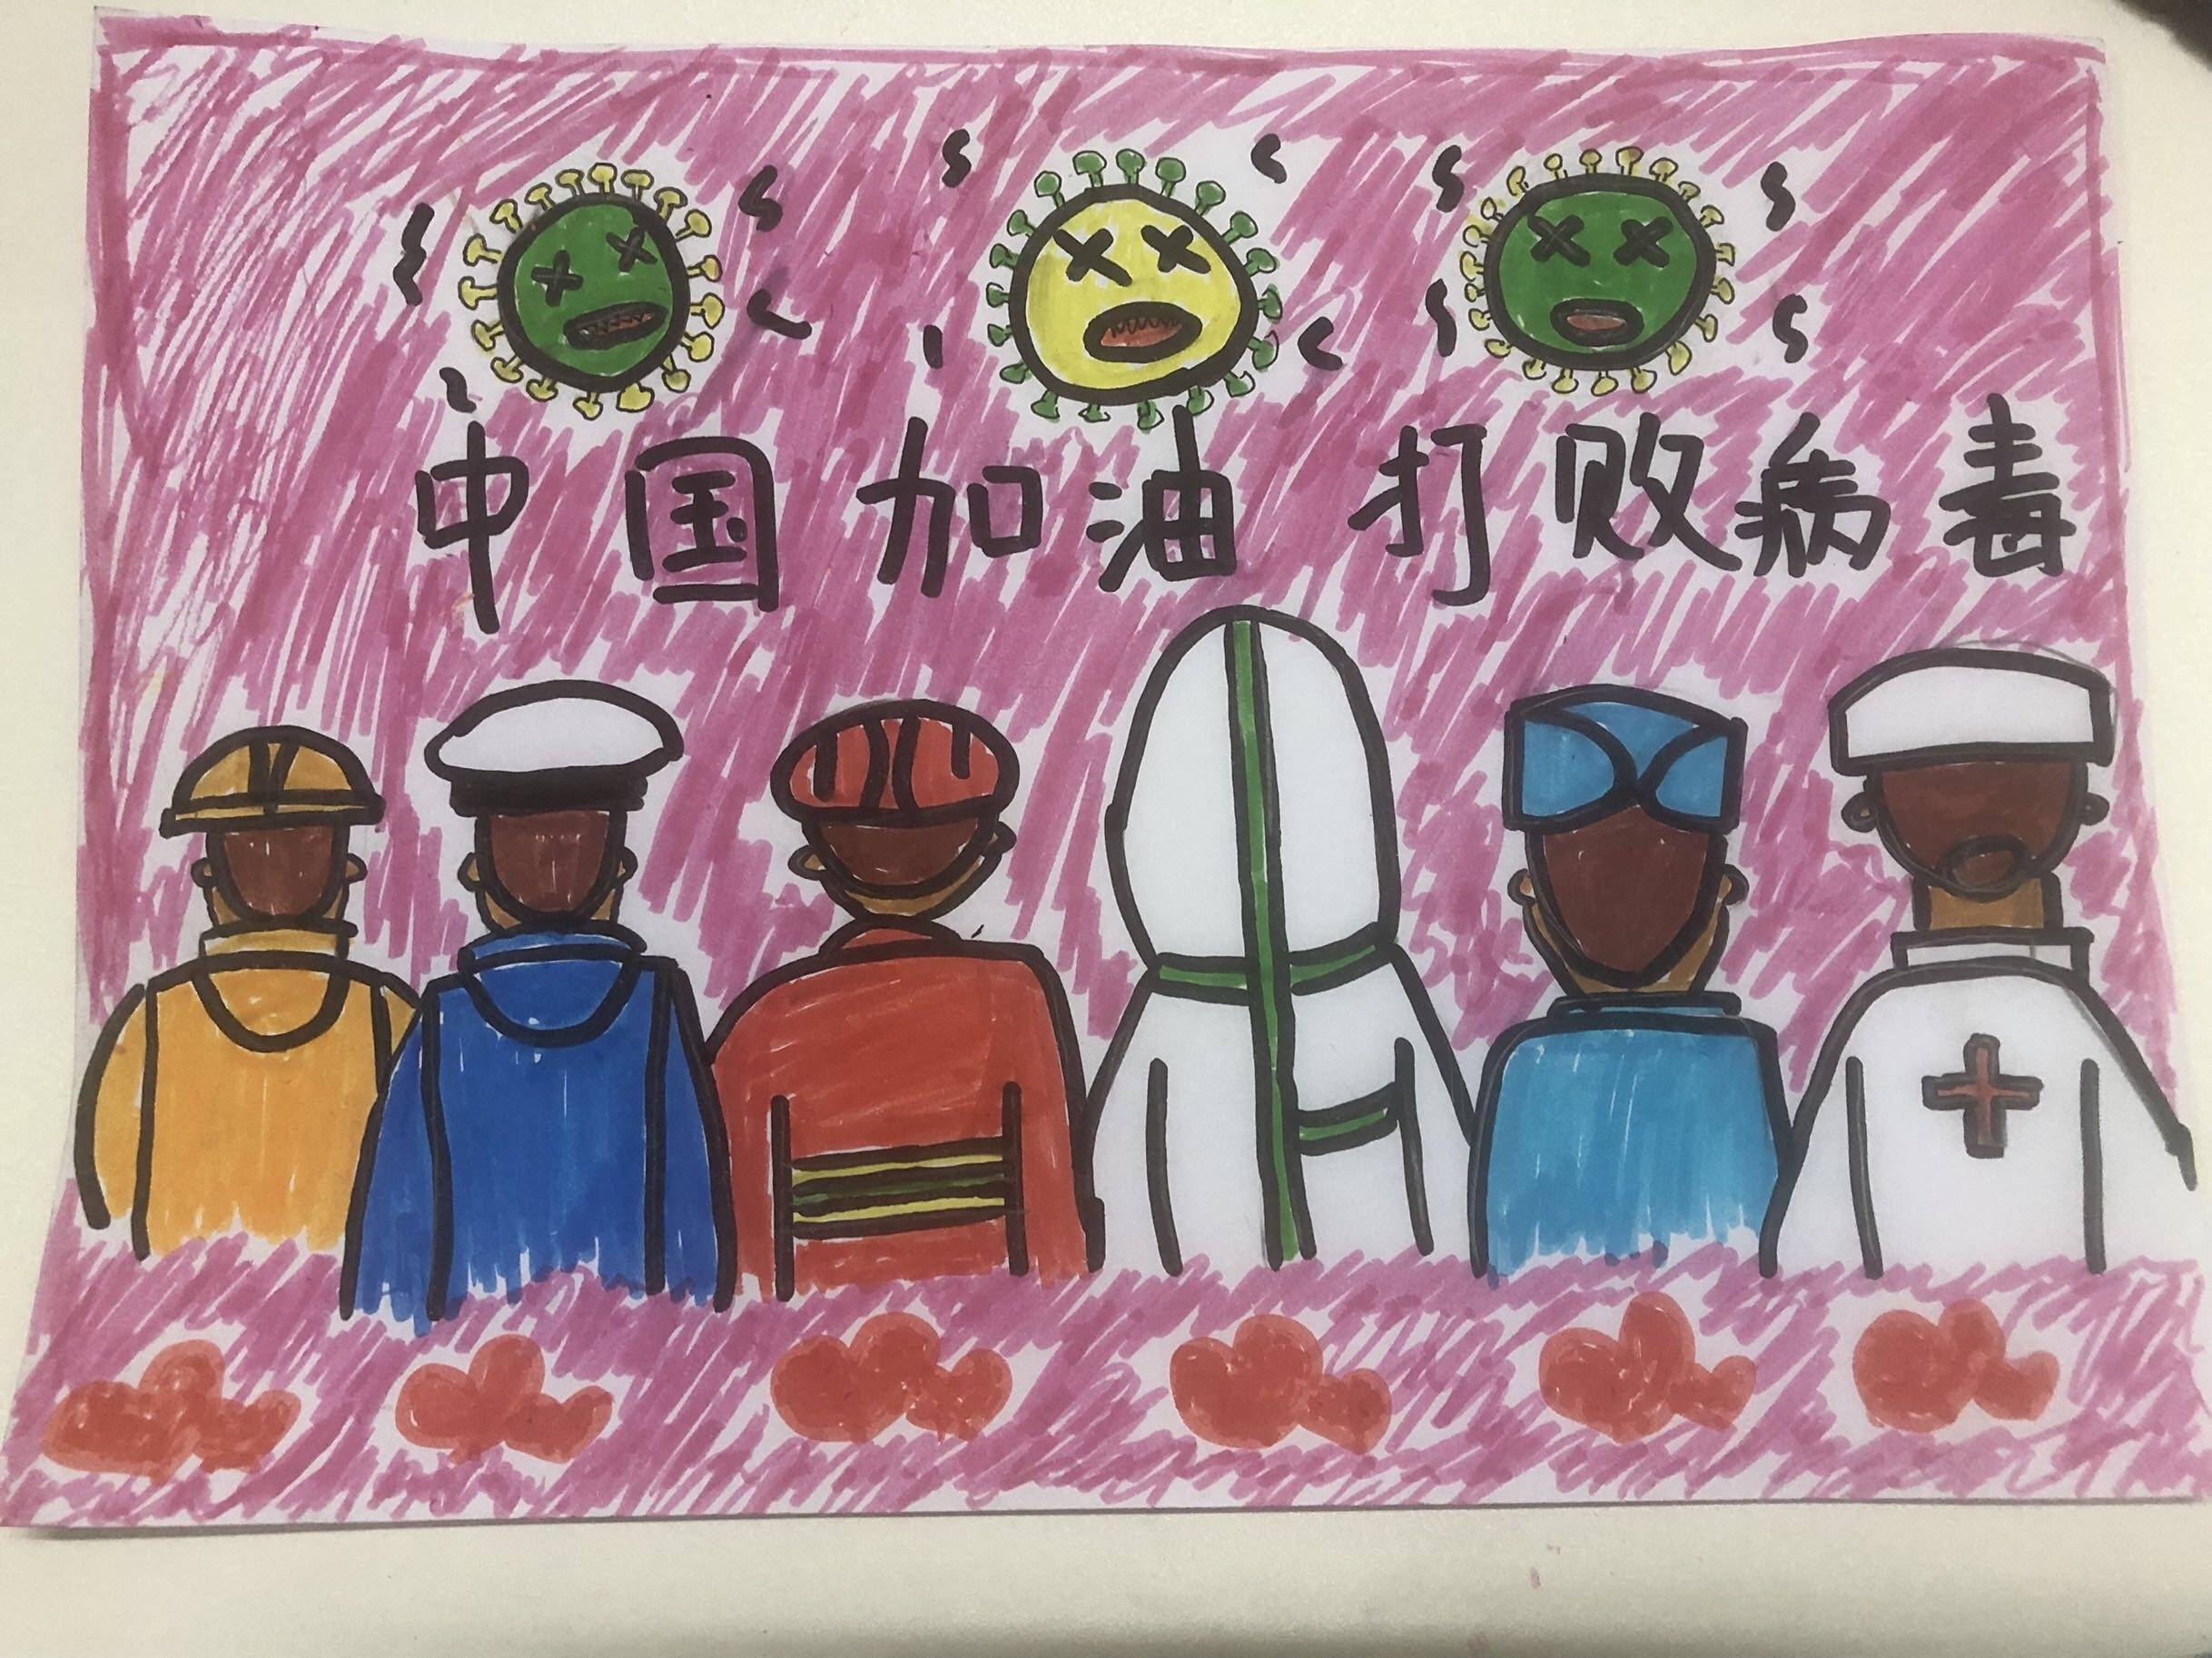 中国疫情加油绘画图片